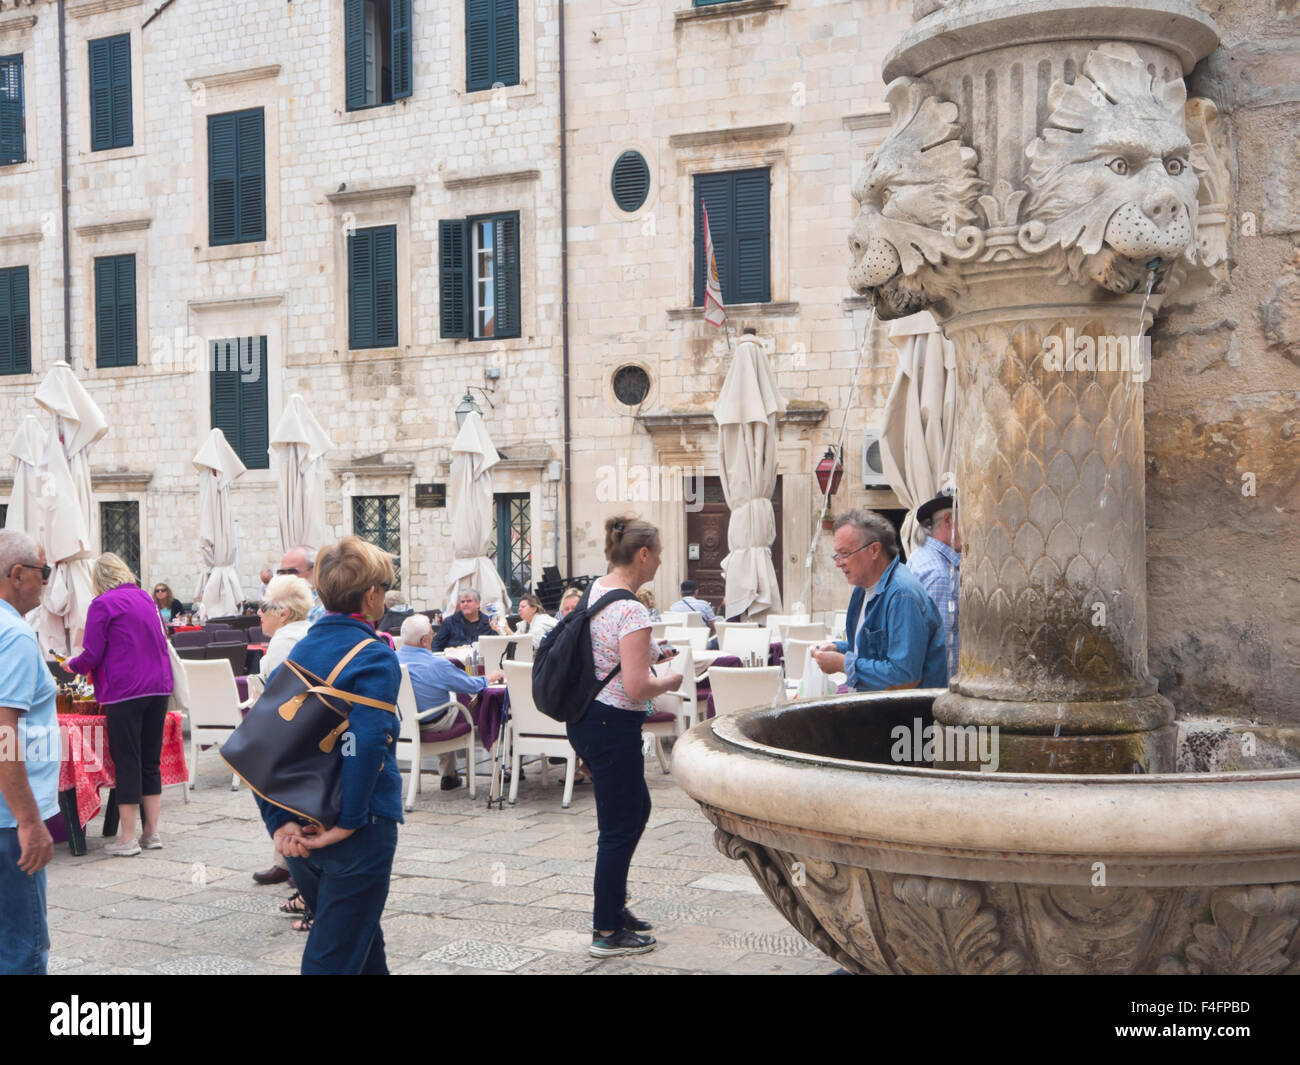 Fontaine du Lion et les touristes dans la place Gundulic dans le centre de la vieille ville 'Stari Grad' de Dubrovnik Croatie Banque D'Images